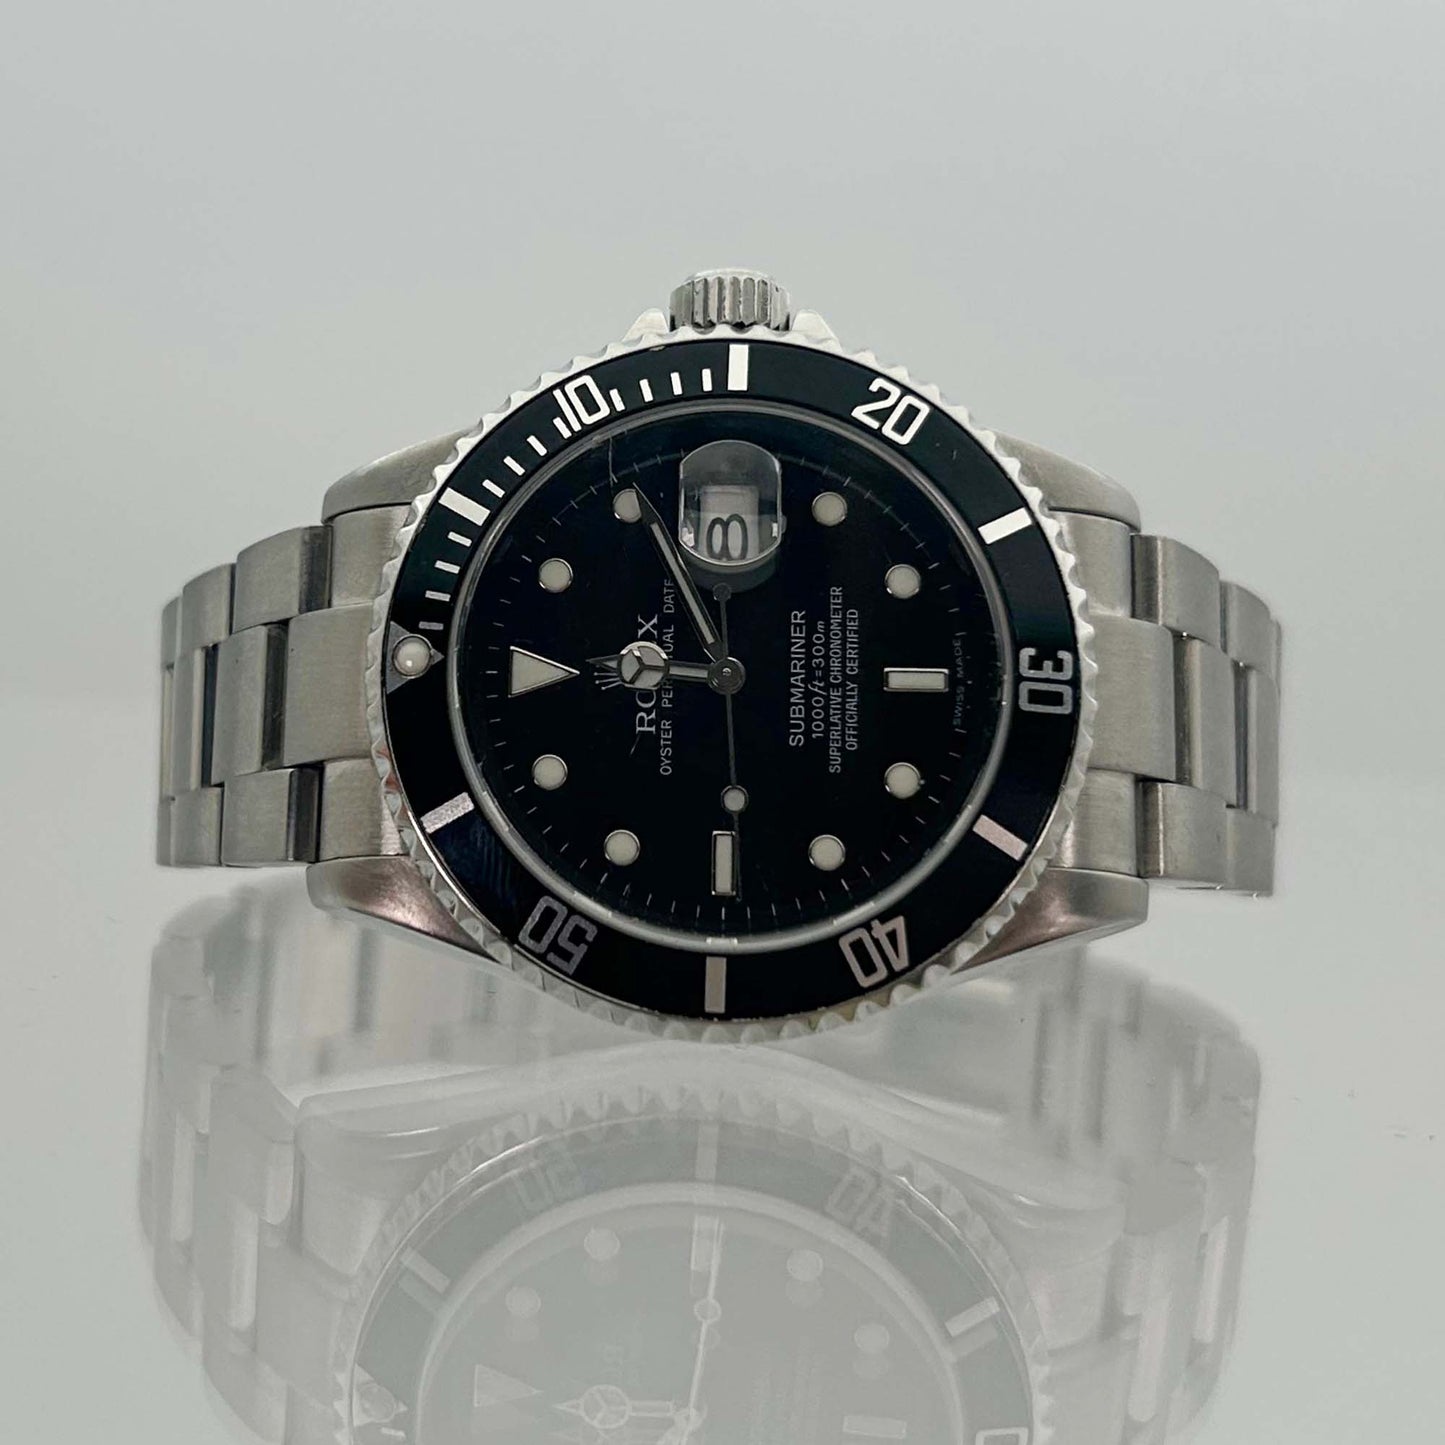 2006 Rolex Submariner Watch Reflection